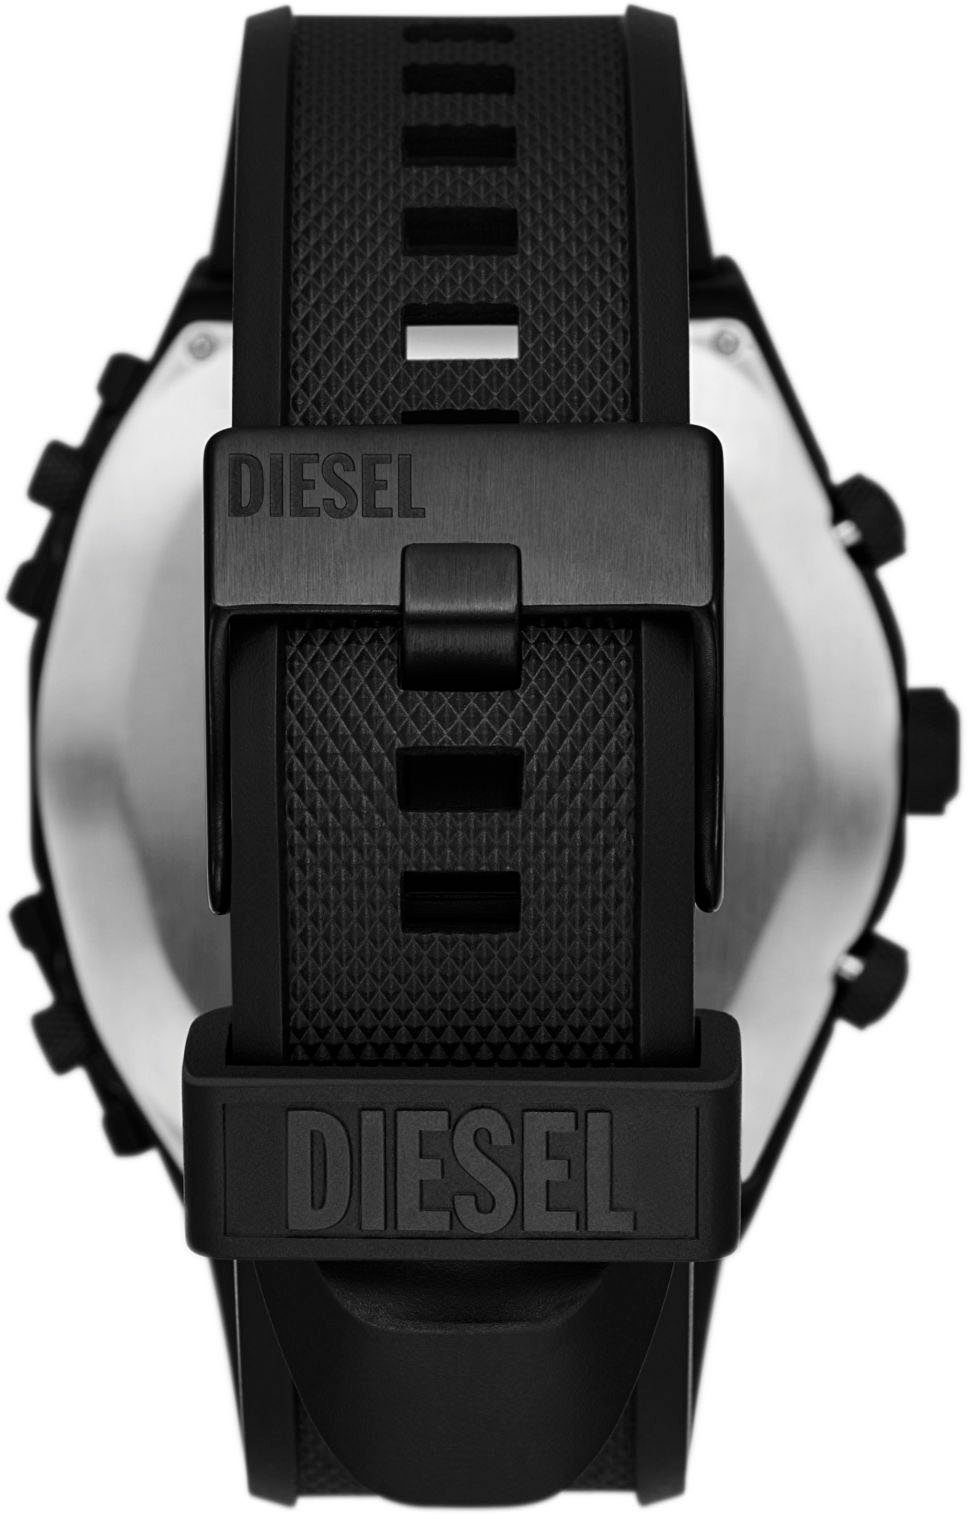 Diesel Chronograph SIDESHOW, DZ7474